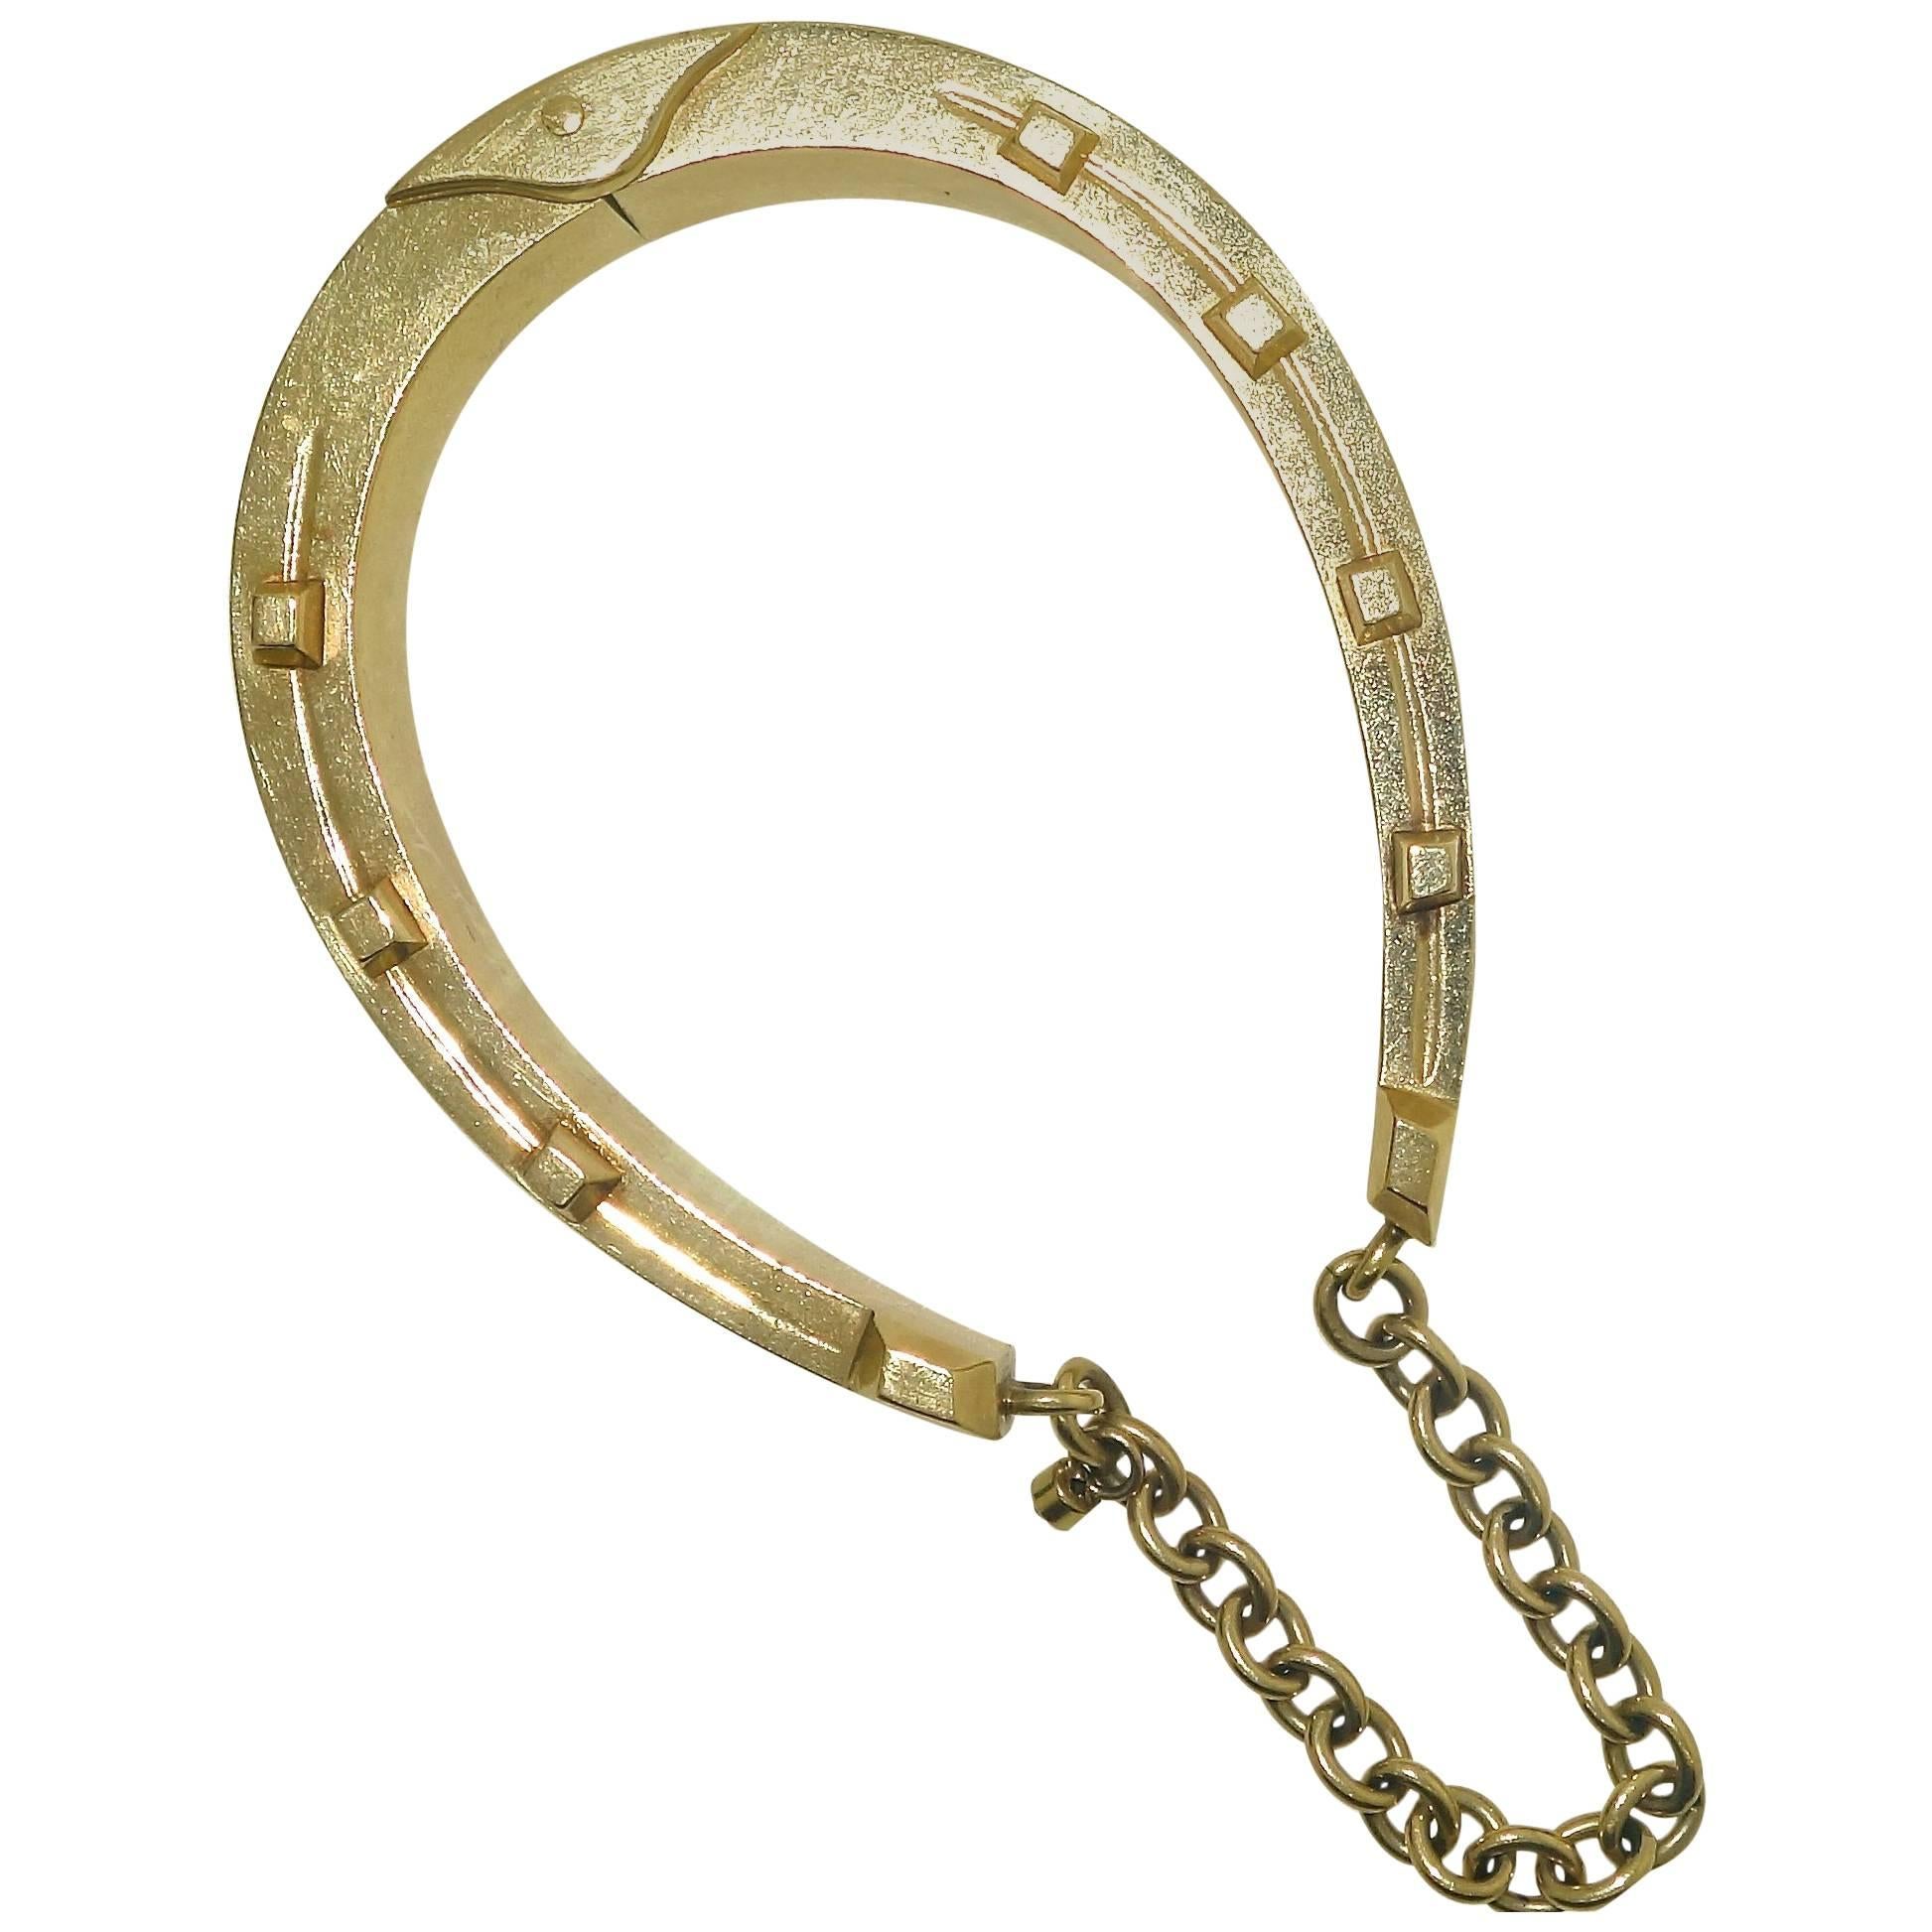 Antique Gold Horse-Shoe Motif Bracelet.